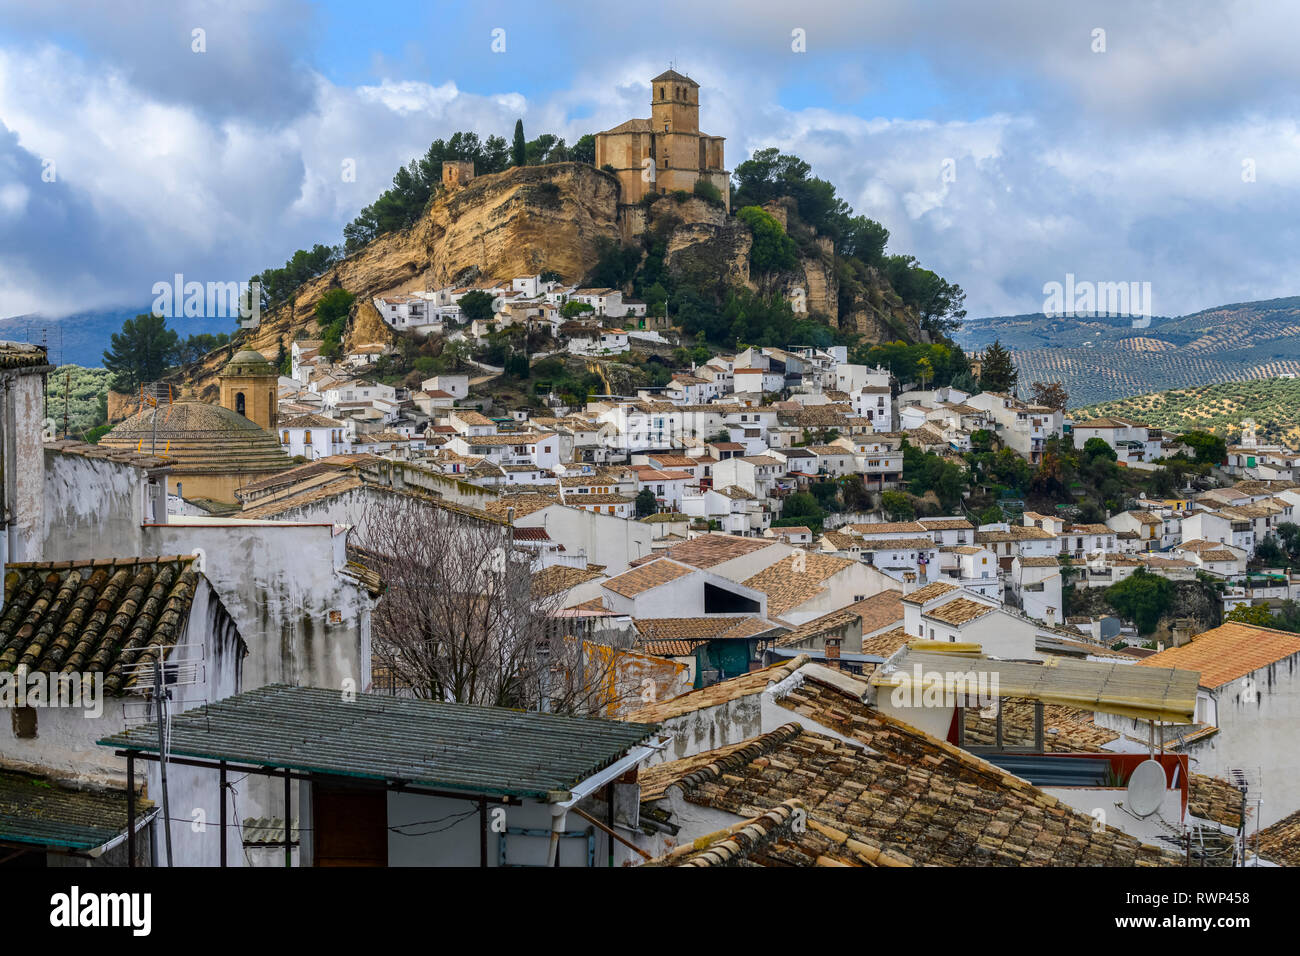 Le rovine di un castello moresco sulla cima di una collina con le case il riempimento della collina e gli uliveti delle colline; Montefrio, provincia di Granada, Spagna Foto Stock